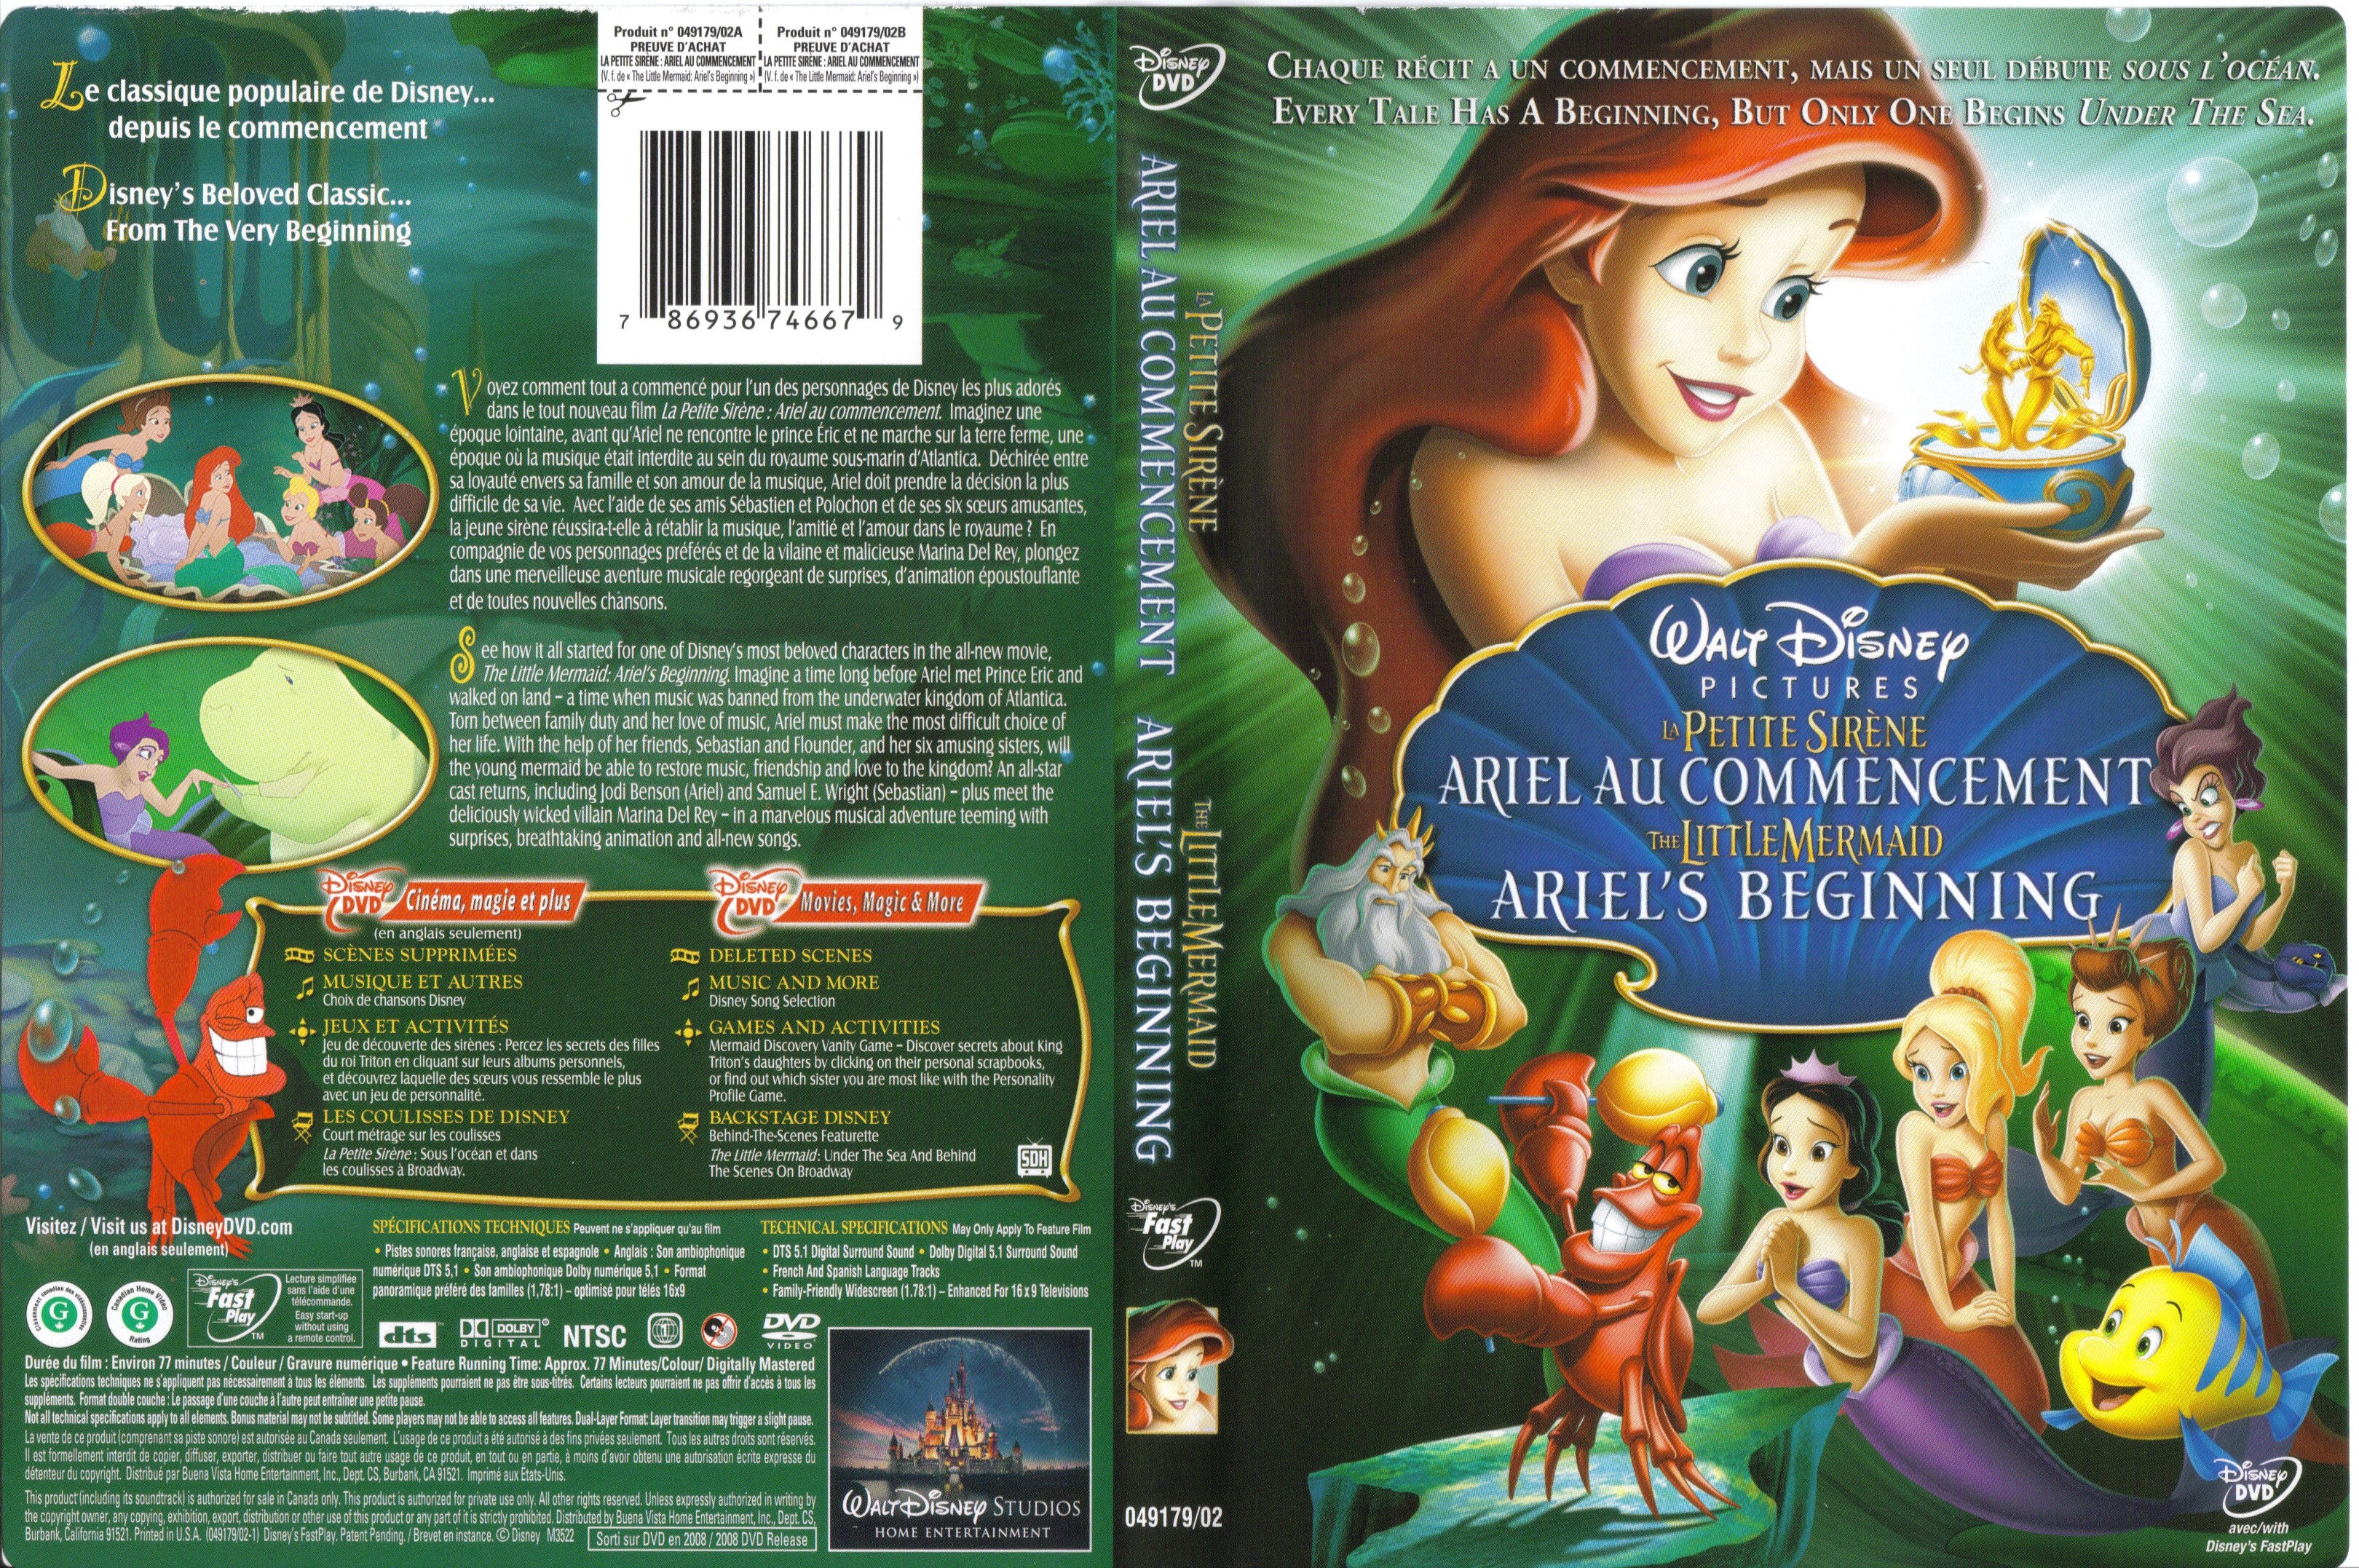 Jaquette DVD La petite sirene - Ariel au commencement